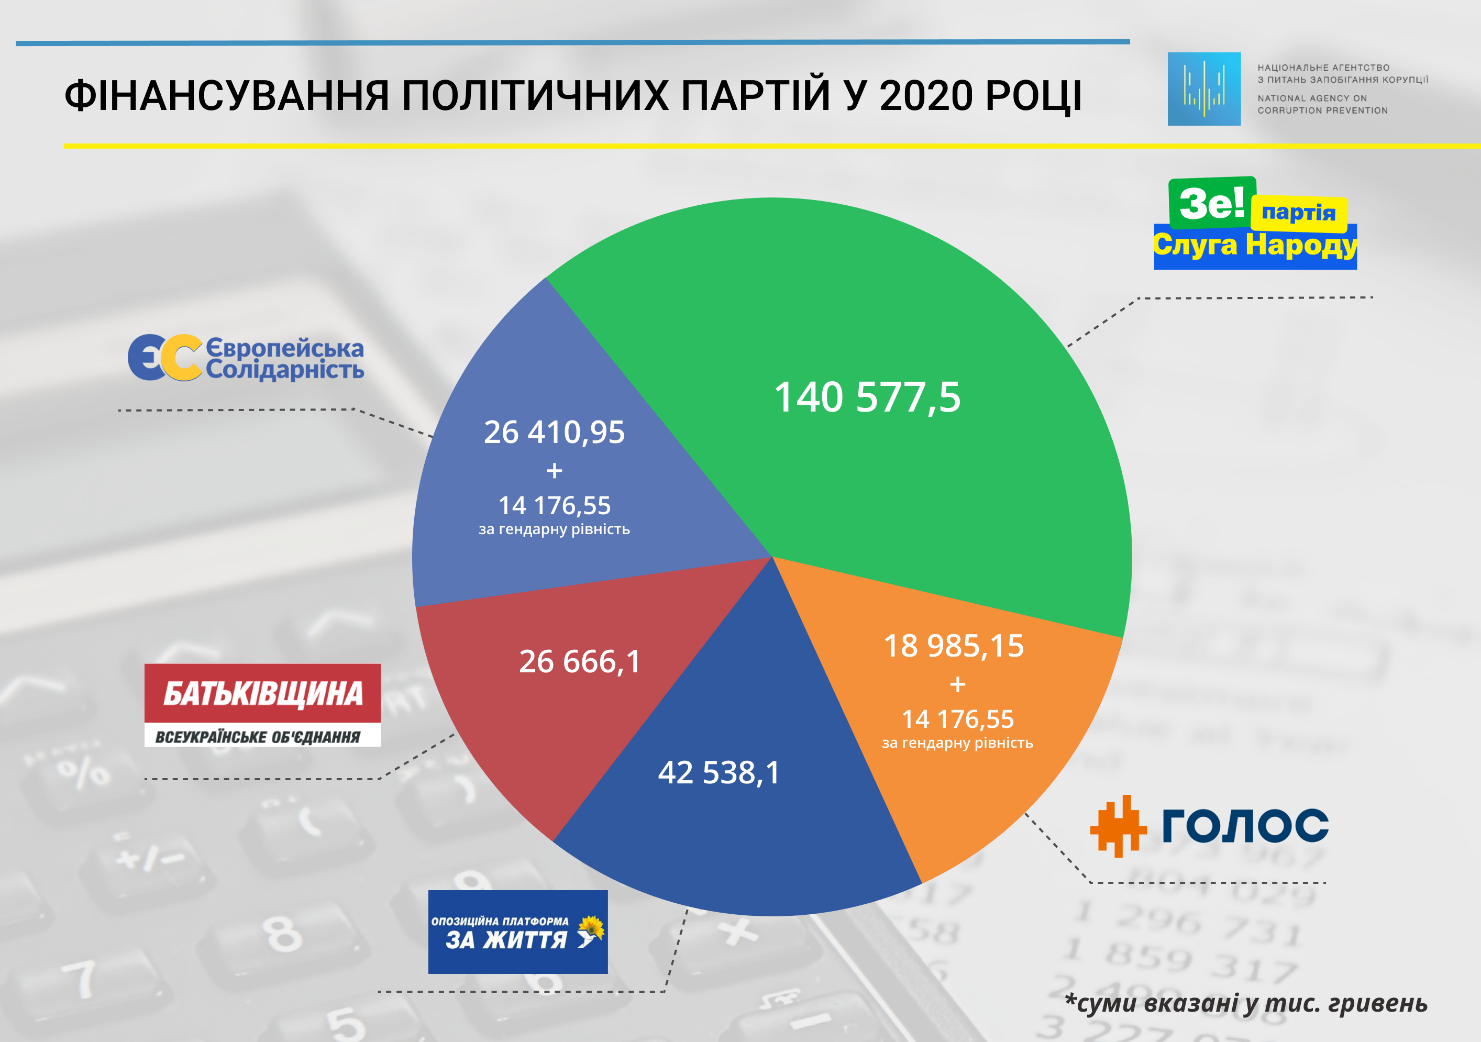 Распределение денег из бюджета на финансирование политических партий в 2020 году. Источник: nazk.gov.ua